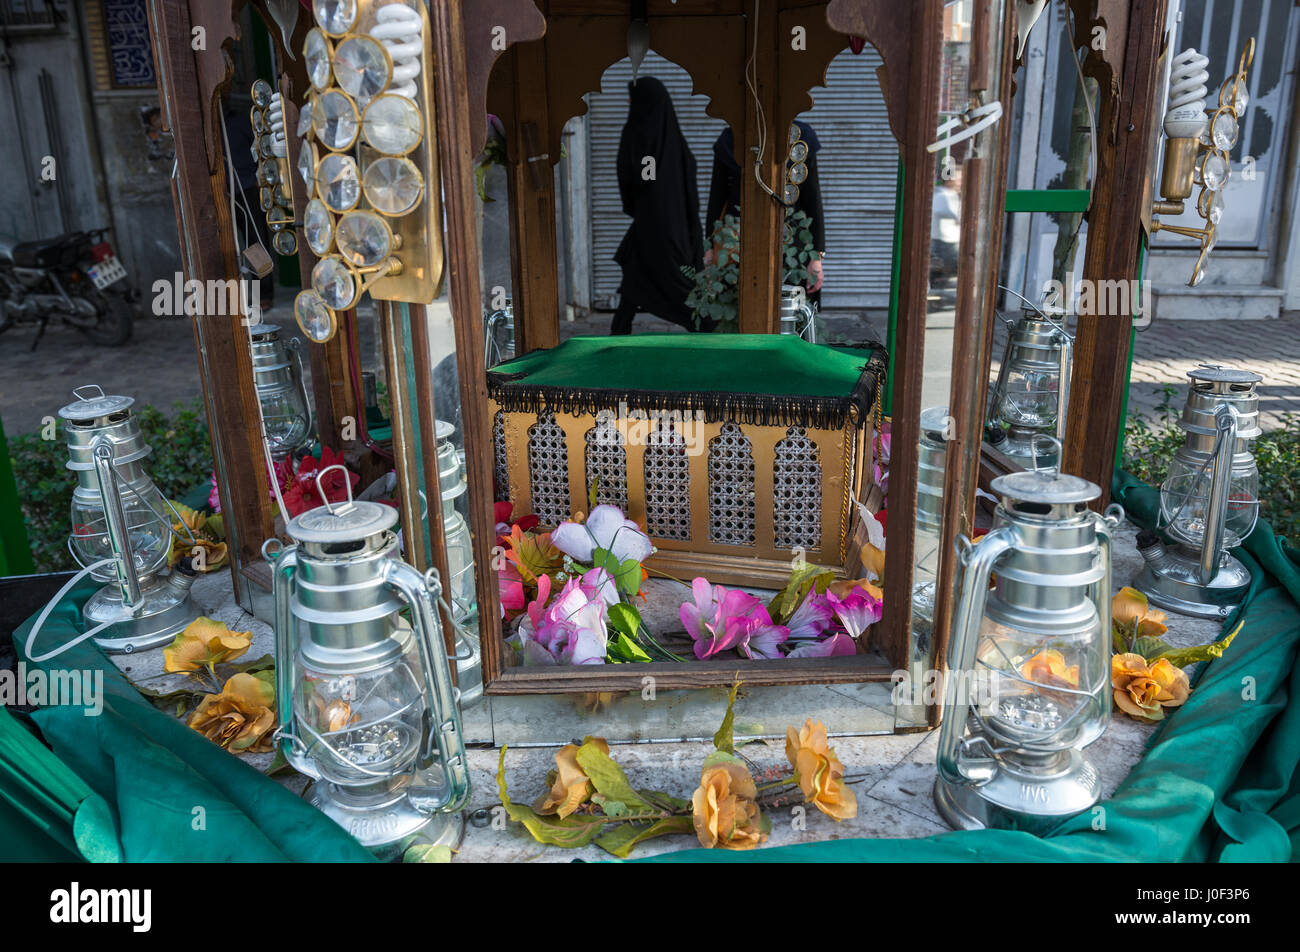 Réplique du tombeau de l'imam Husayn ona rue pendant mois Muharram à Kashan, ville capitale du comté d'Iran Kashan Banque D'Images